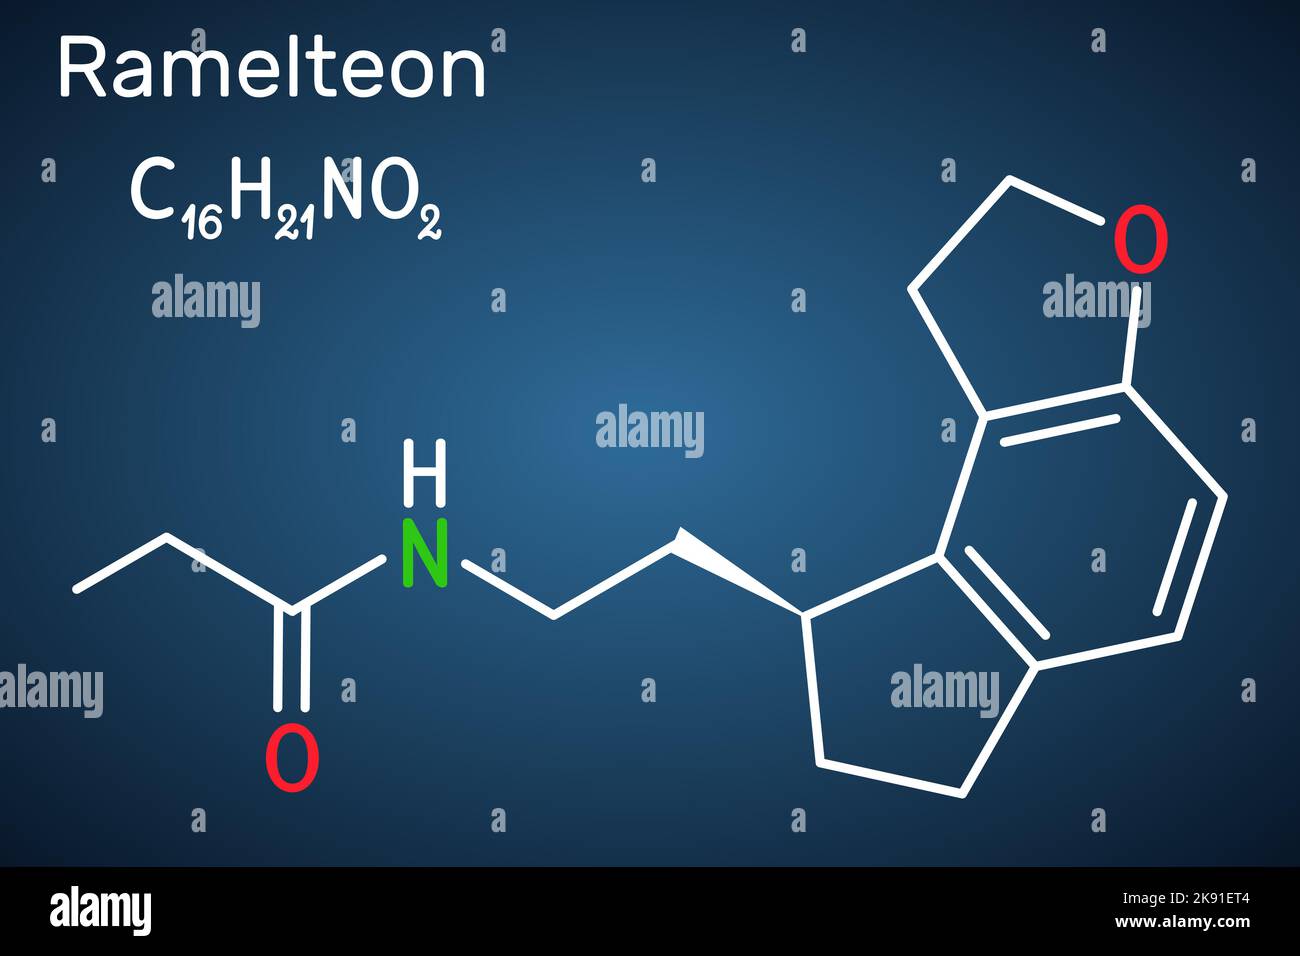 Ramelteon-Molekül. Strukturelle chemische Formel auf dem dunkelblauen Hintergrund Stock Vektor